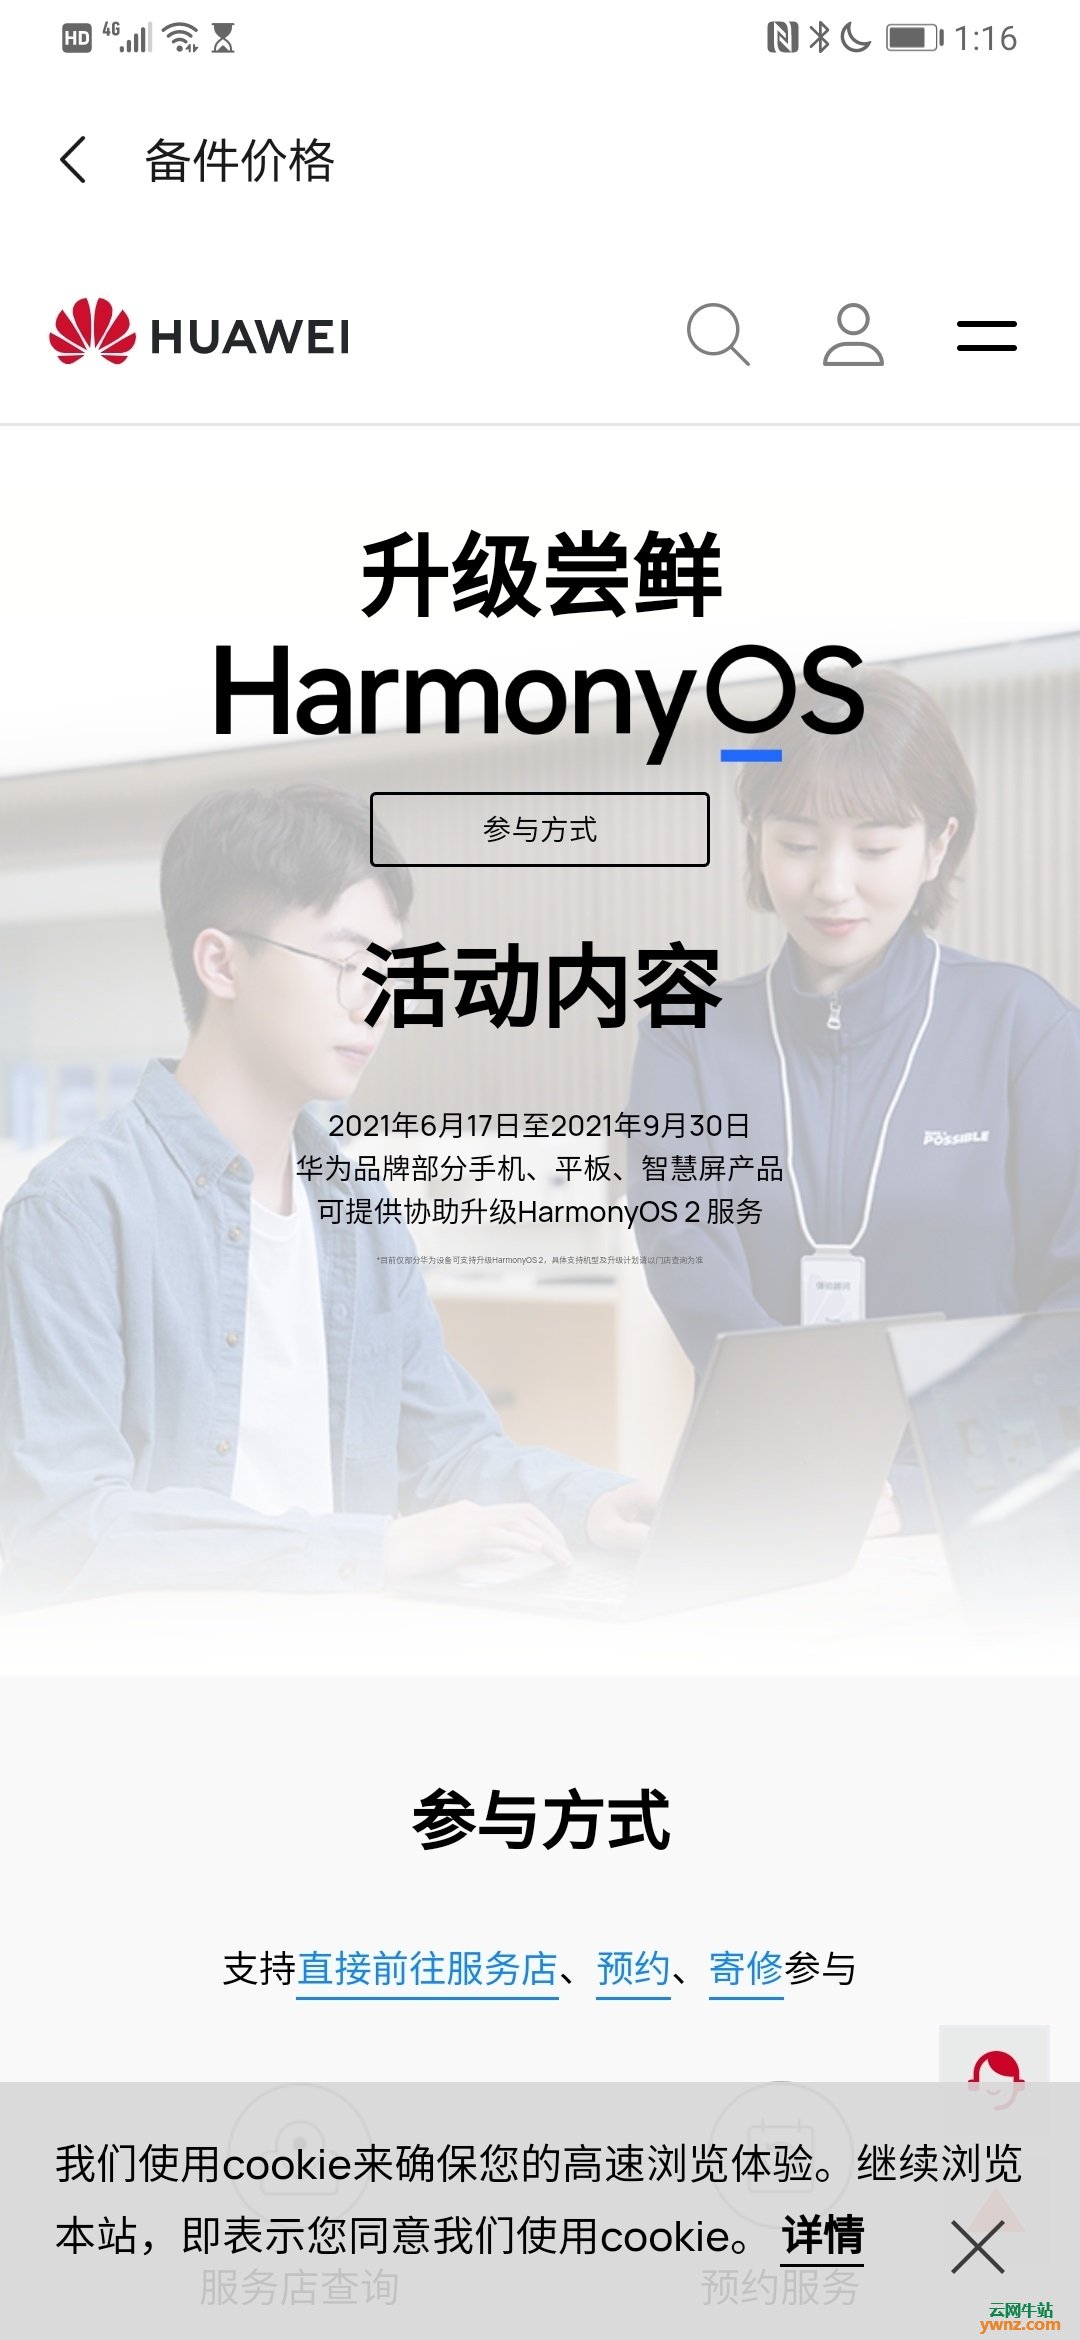 华为实体门店提供协助升级到鸿蒙HarmonyOS 2系统的服务吗